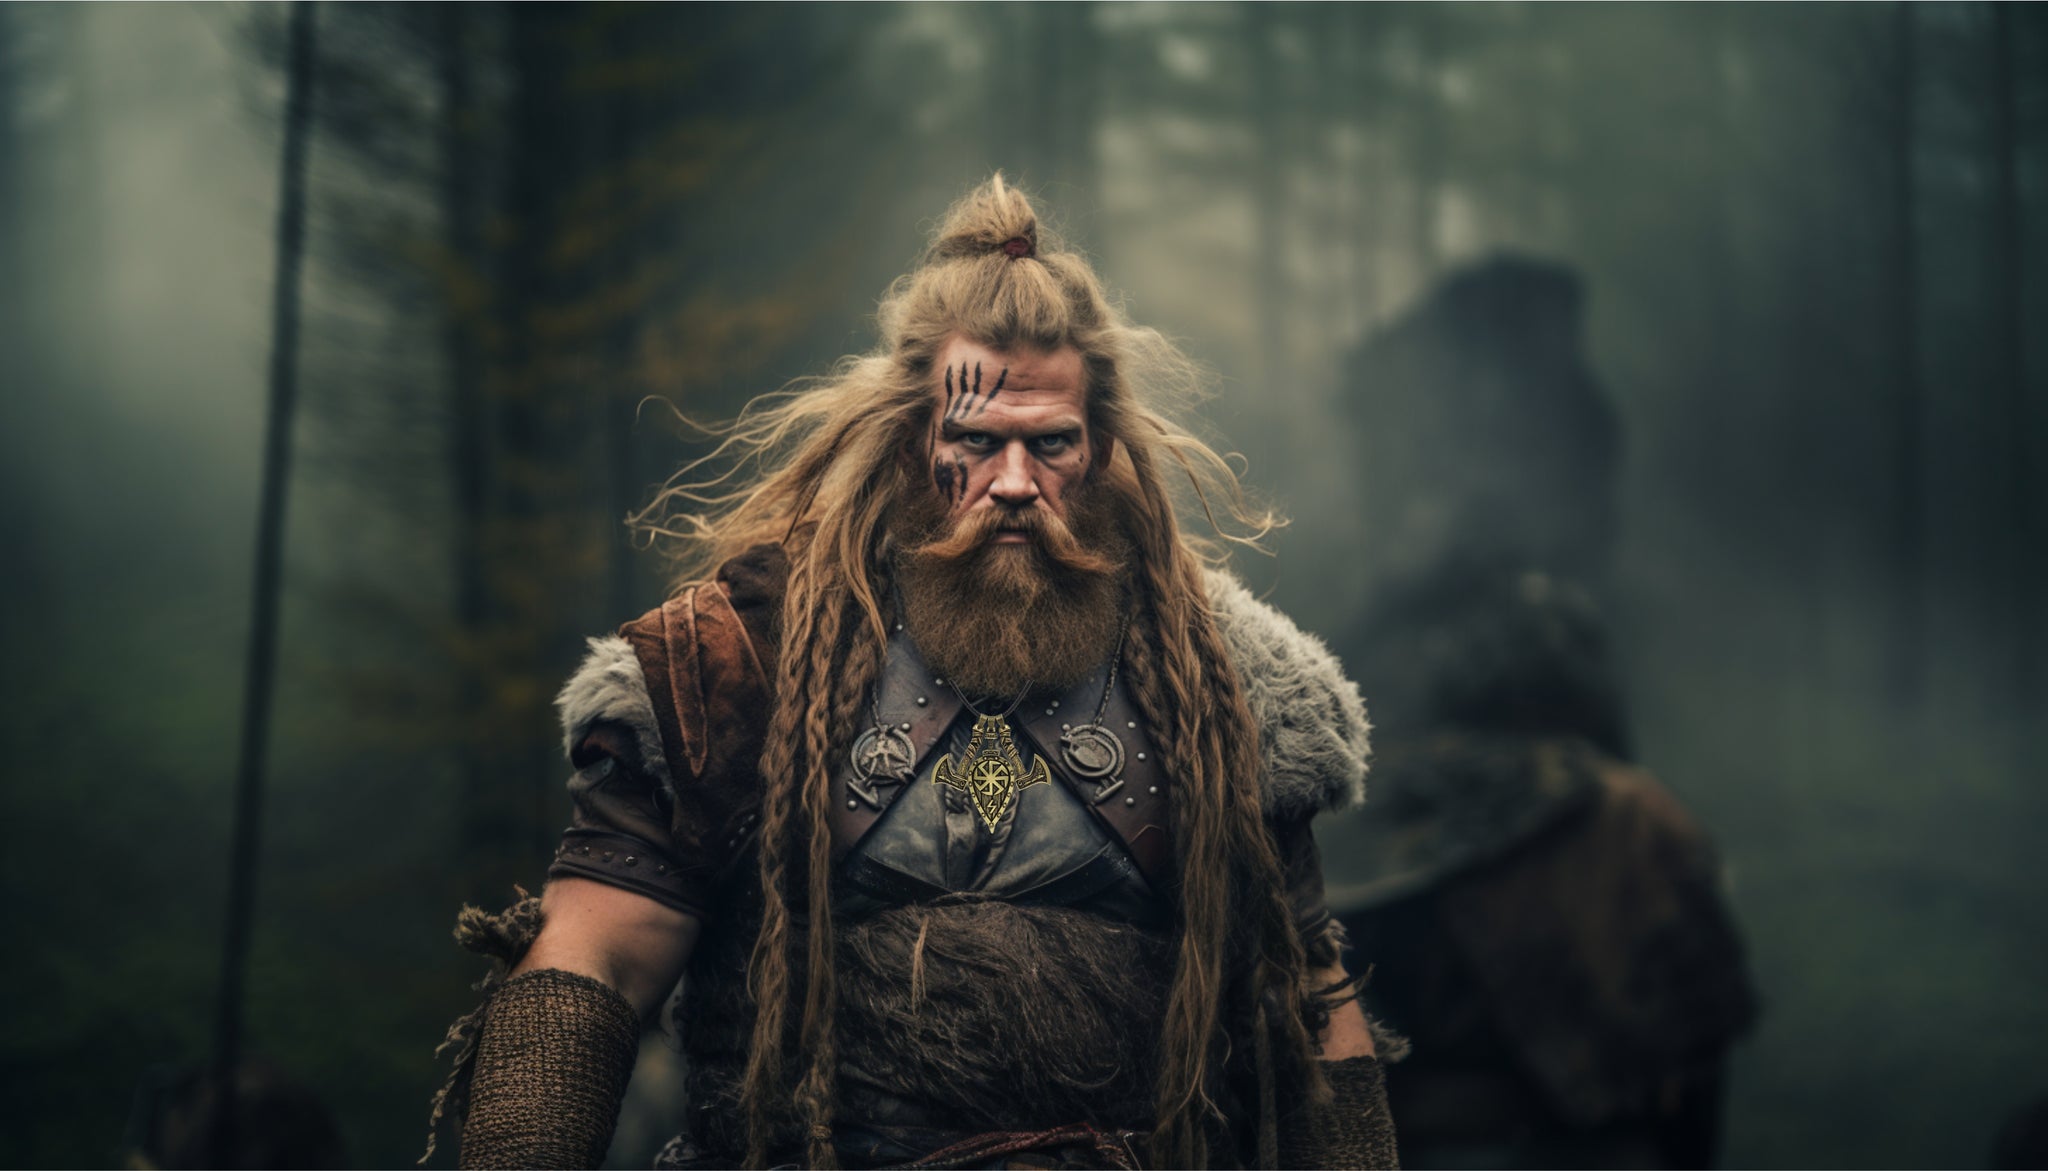 guerrier viking portant le pendentif bouclier svastika sowilo et haches